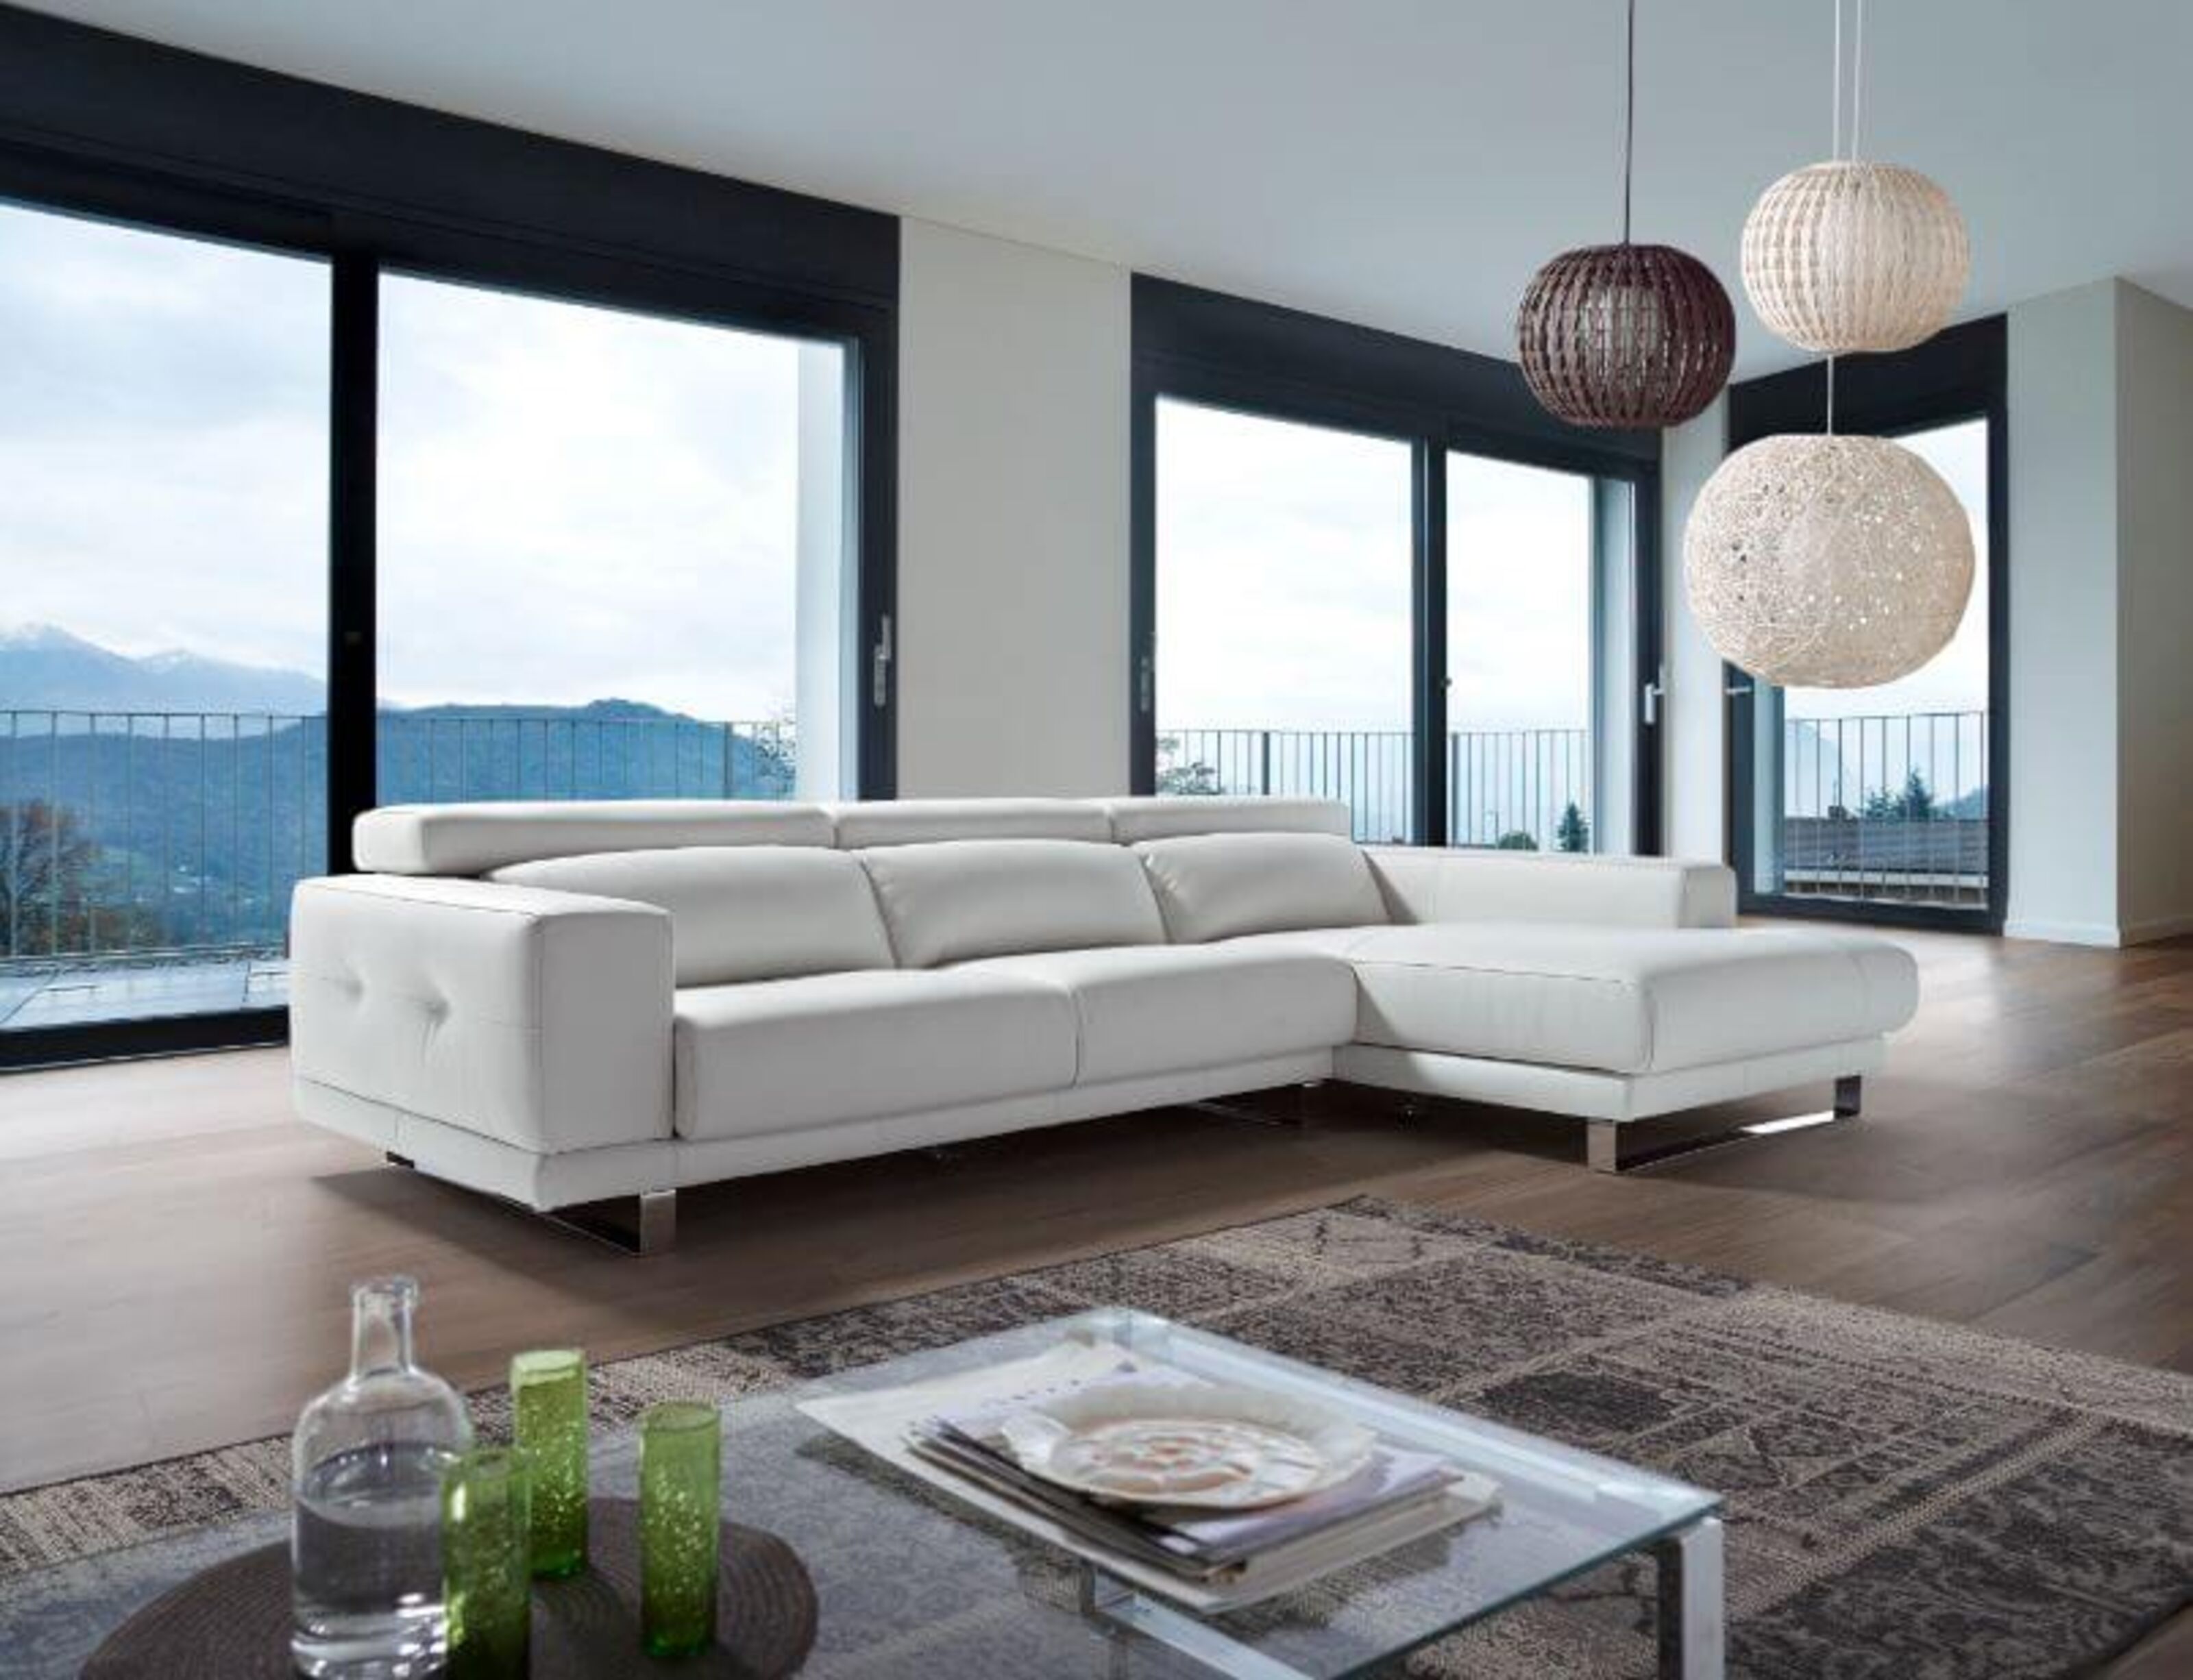 Ambar Italian Leather Corner Group Sofa, White Leather L Shaped Sofa